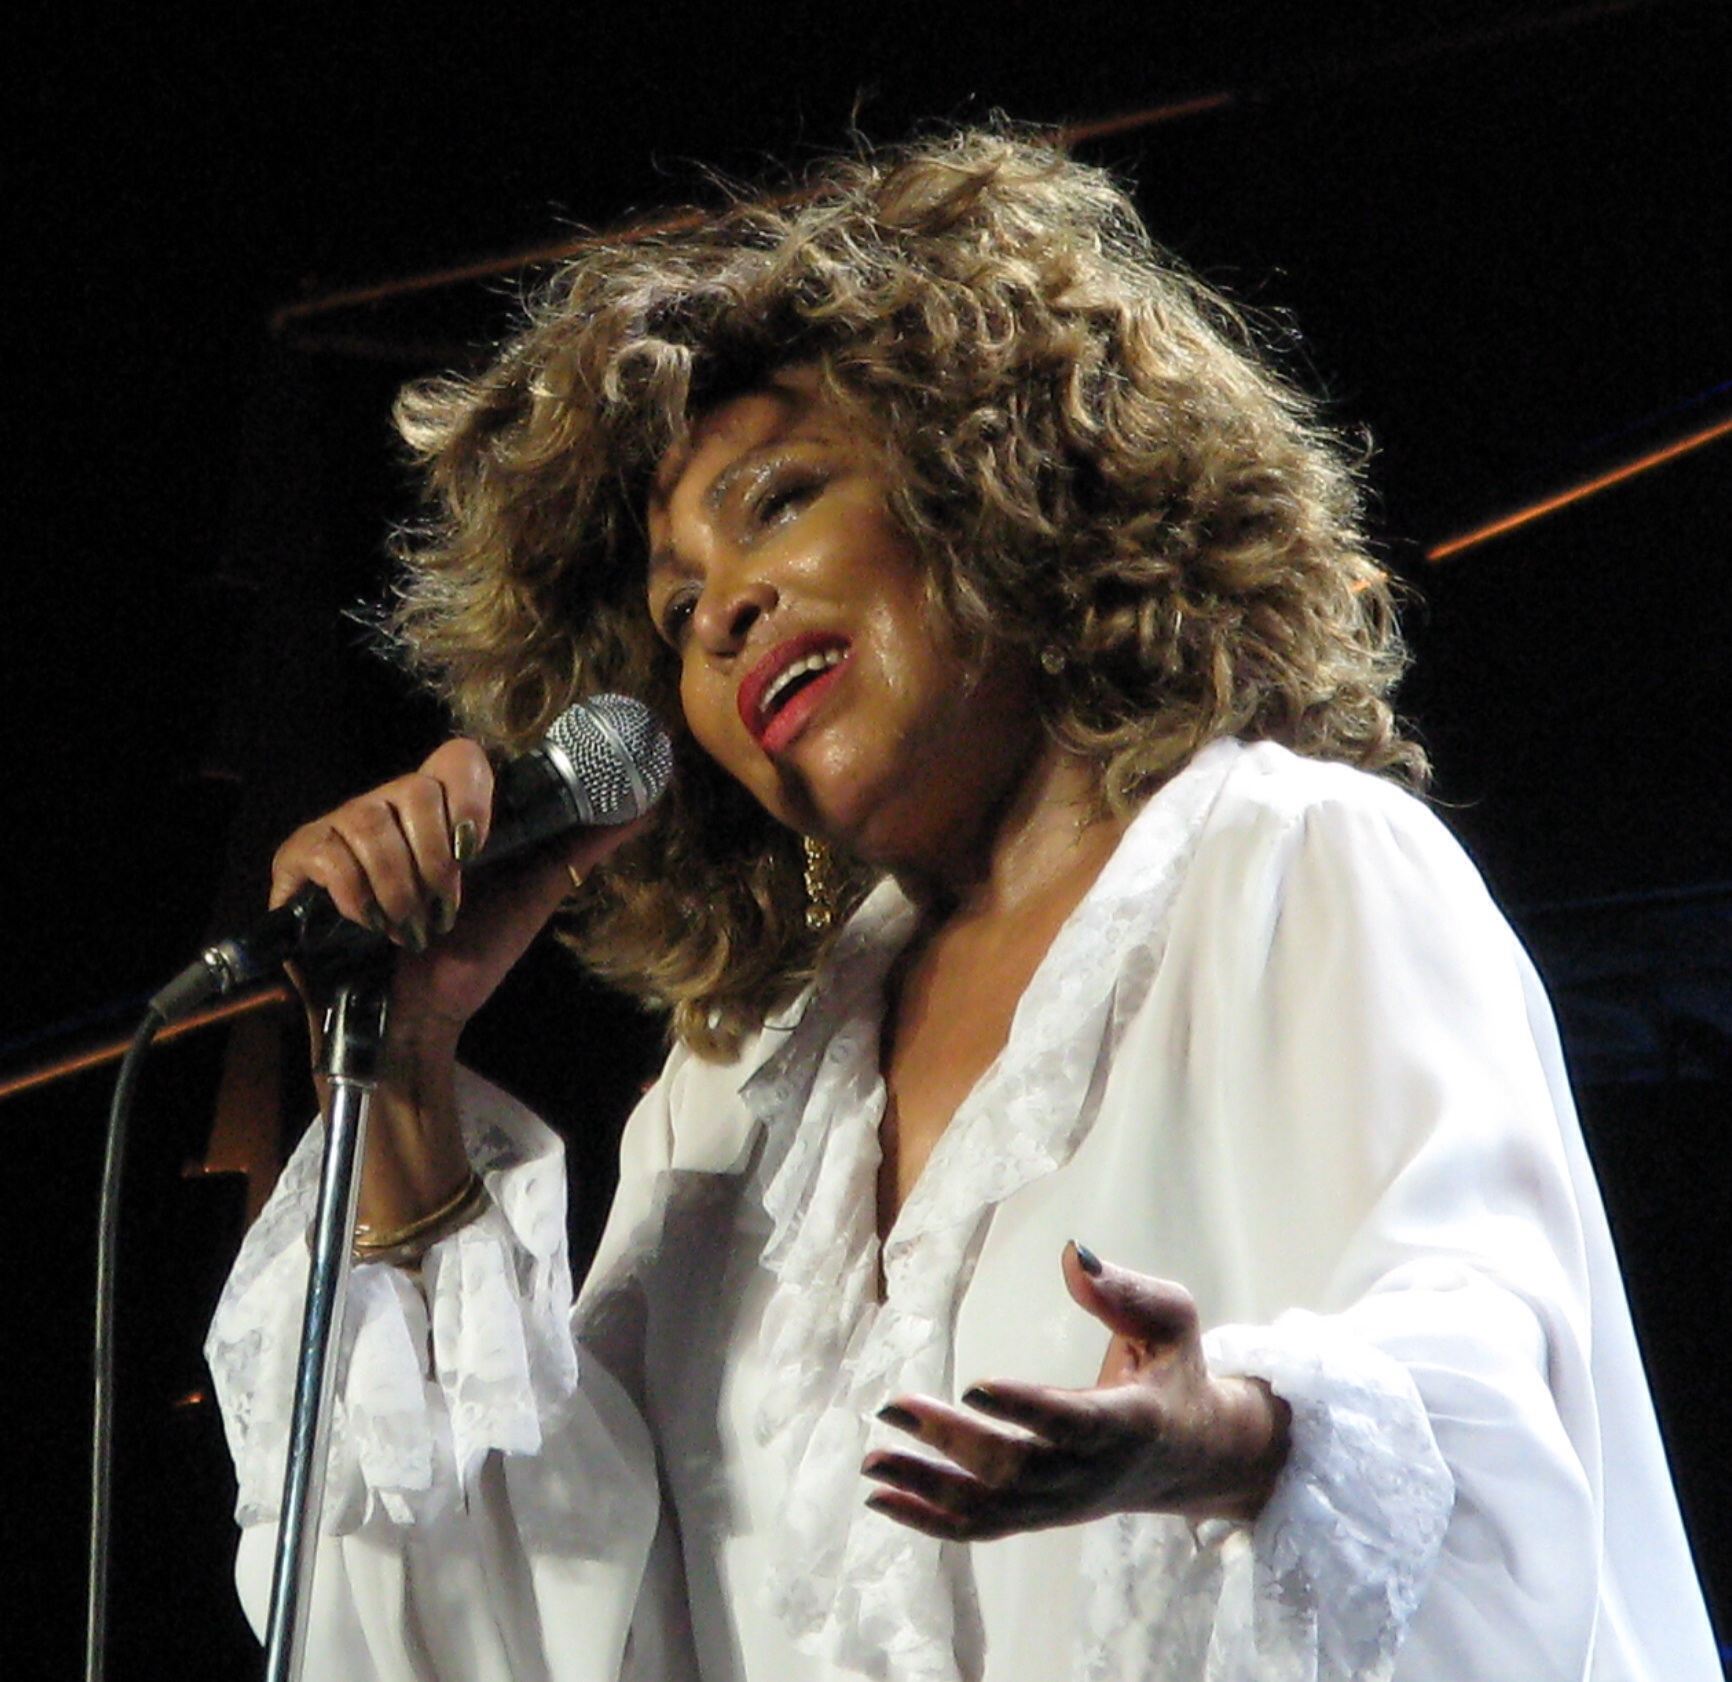 Tina Turner surge em evento (quase) irreconhecível [FOTO]